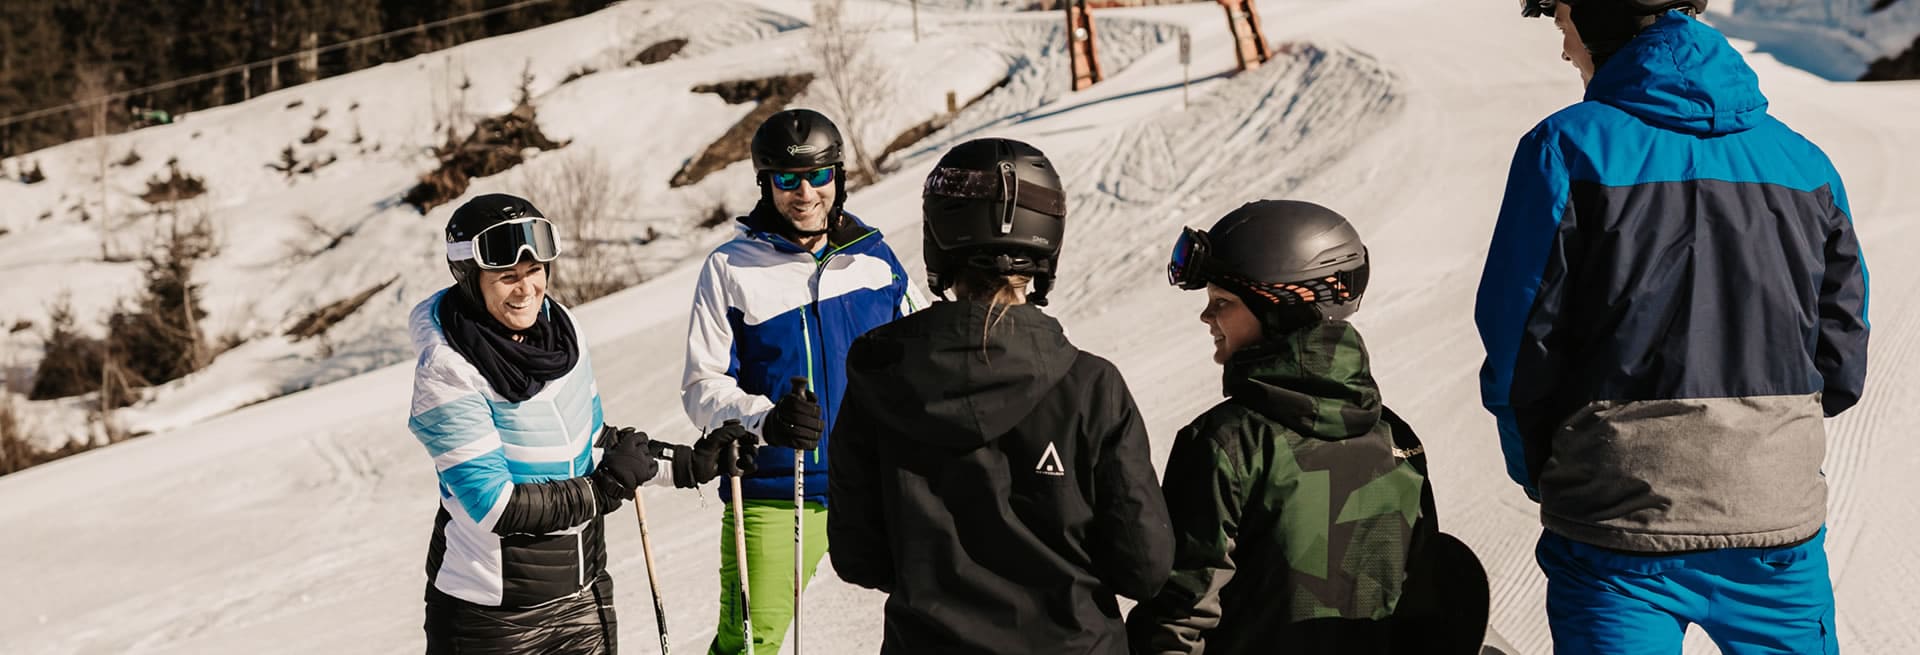 Skiurlaub mit Kindern in Ski amadé, Österreich, Salzburger Land